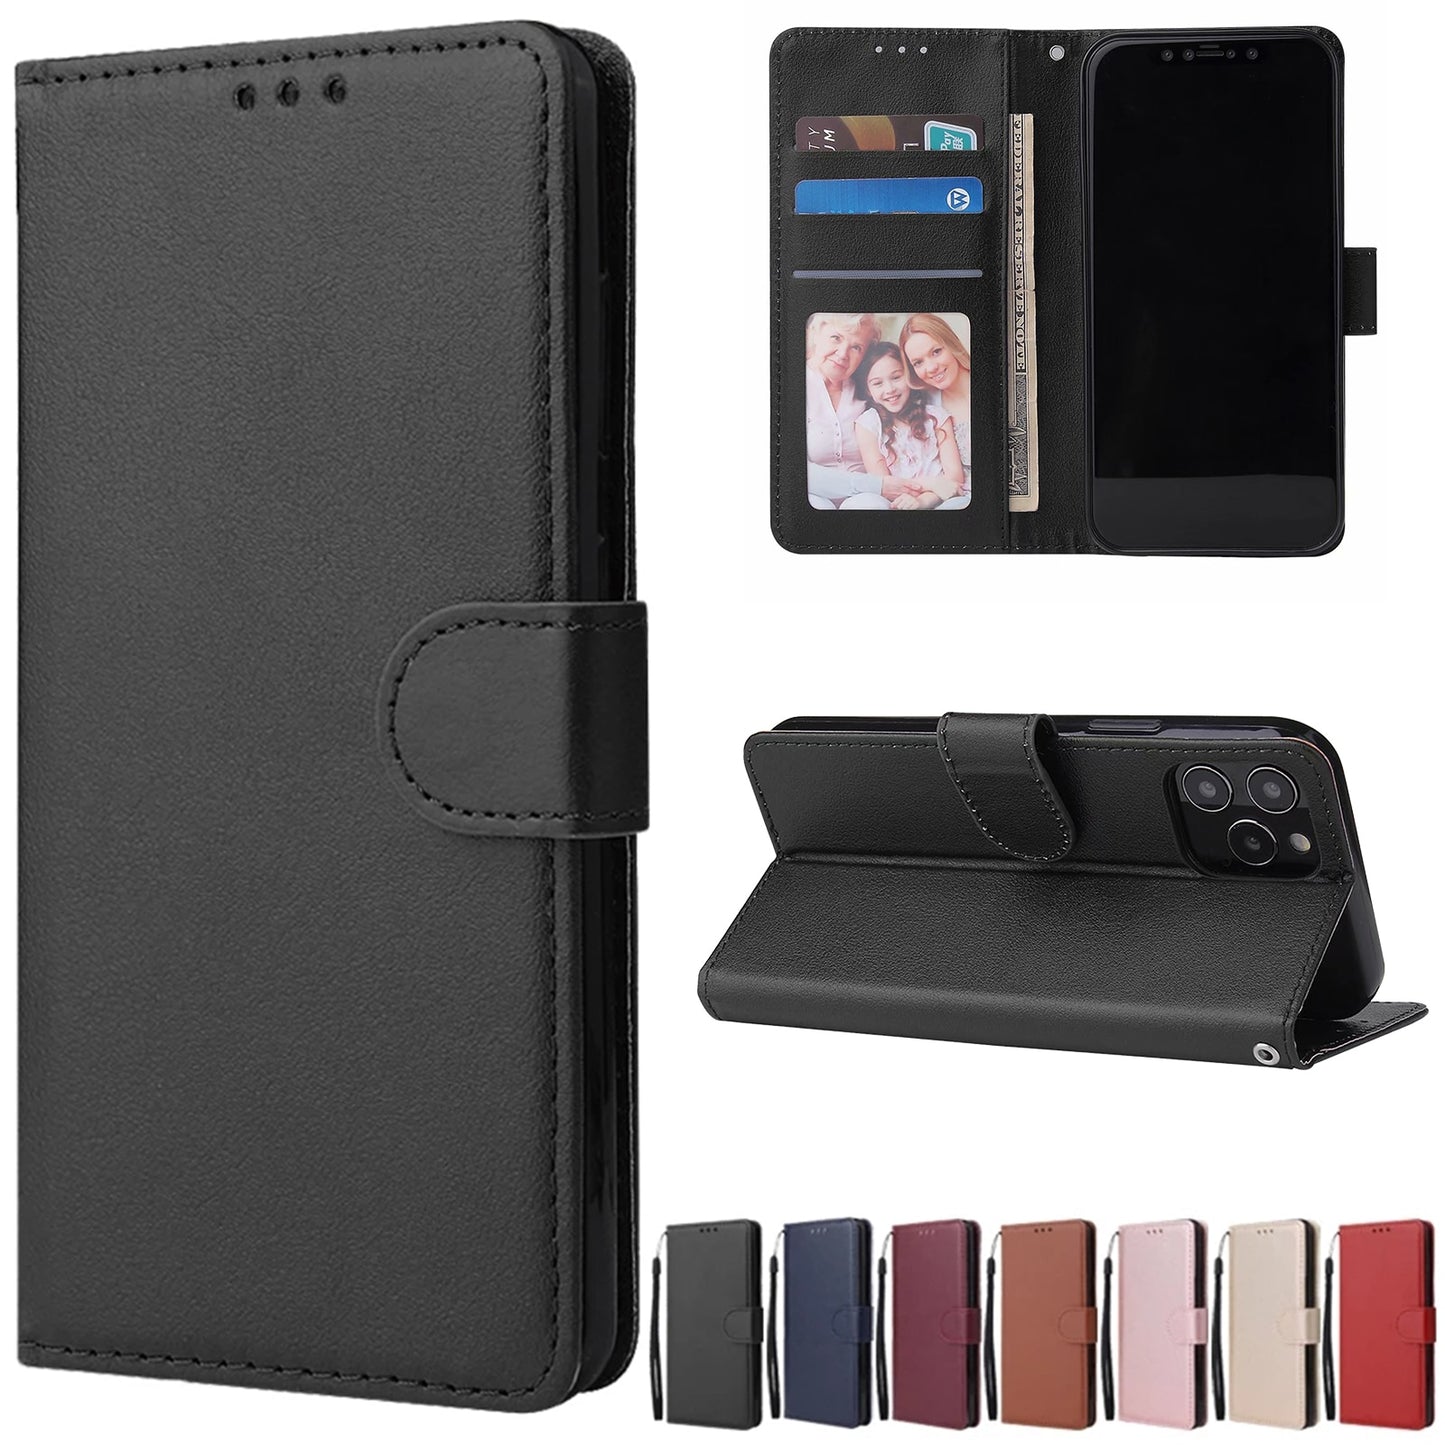 iPhone Wallet Cardholder Leather Case (Black, Blue, Rosegold, Gold)